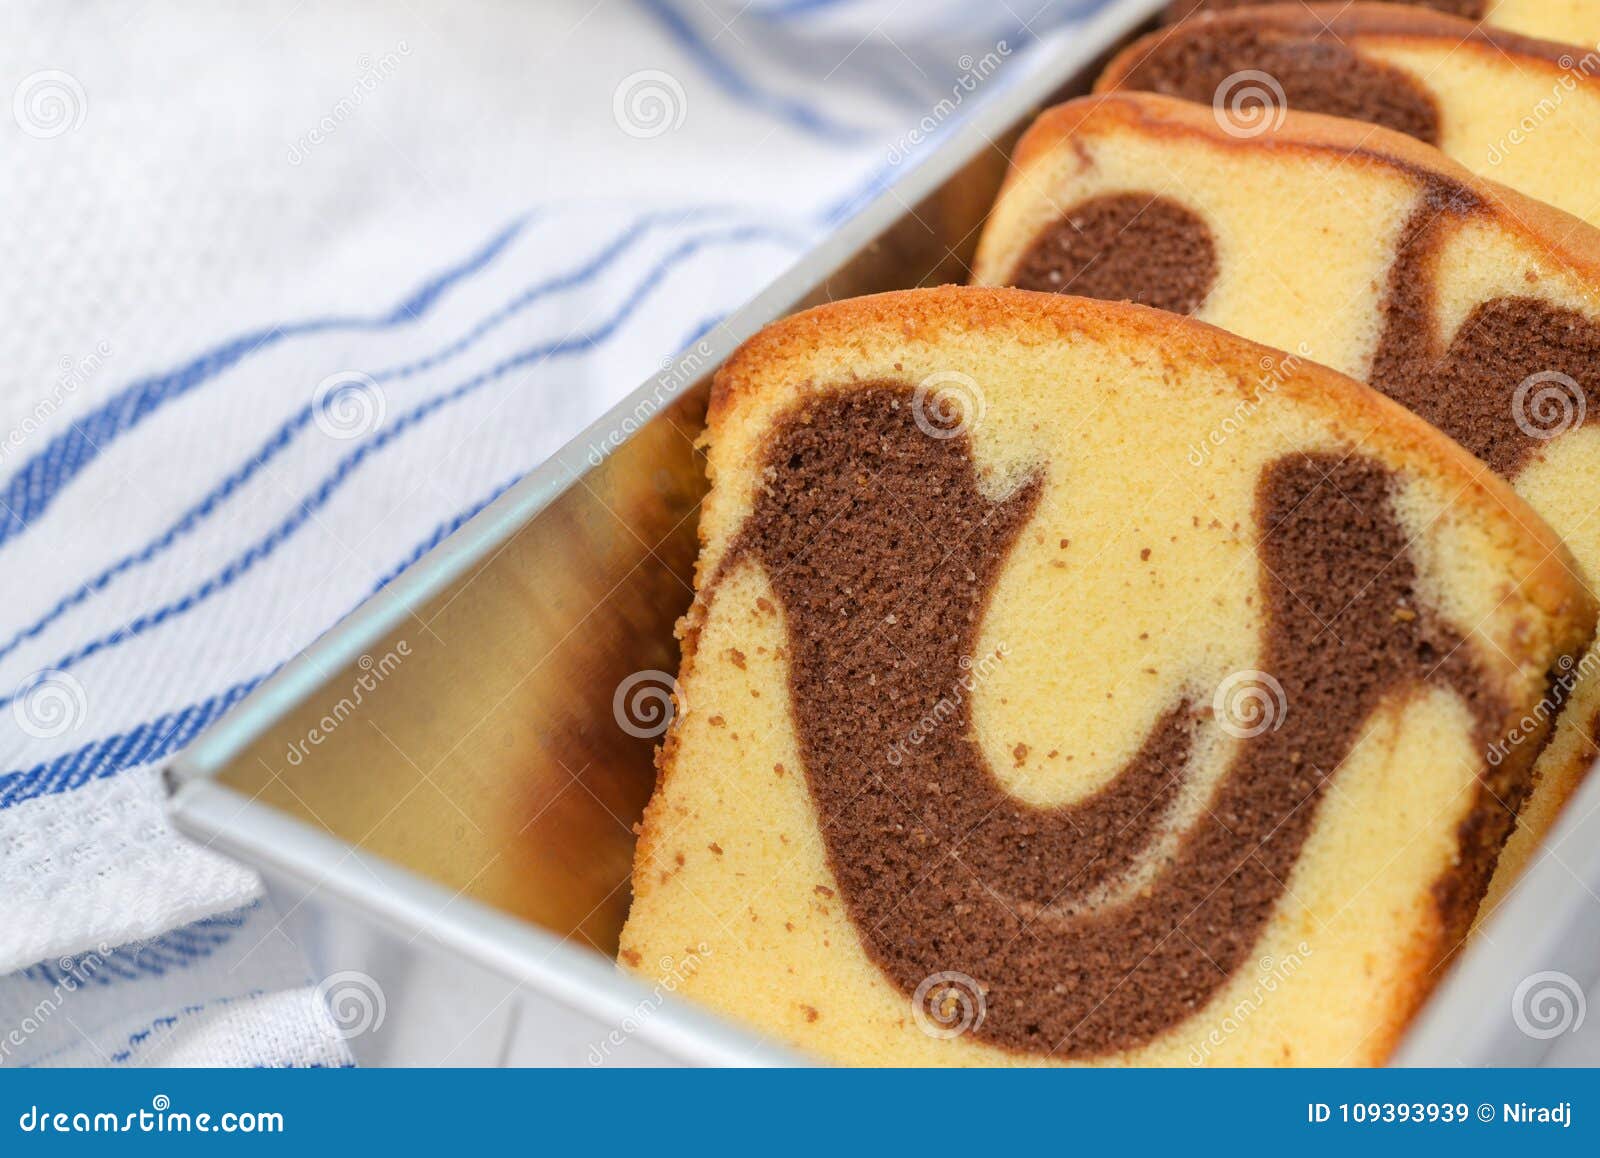 切片大理石花纹蛋糕 库存图片. 图片 包括有 甜甜, 食物, 英镑, 片式, 巧克力, 亚麻布, 可可粉 - 58716363